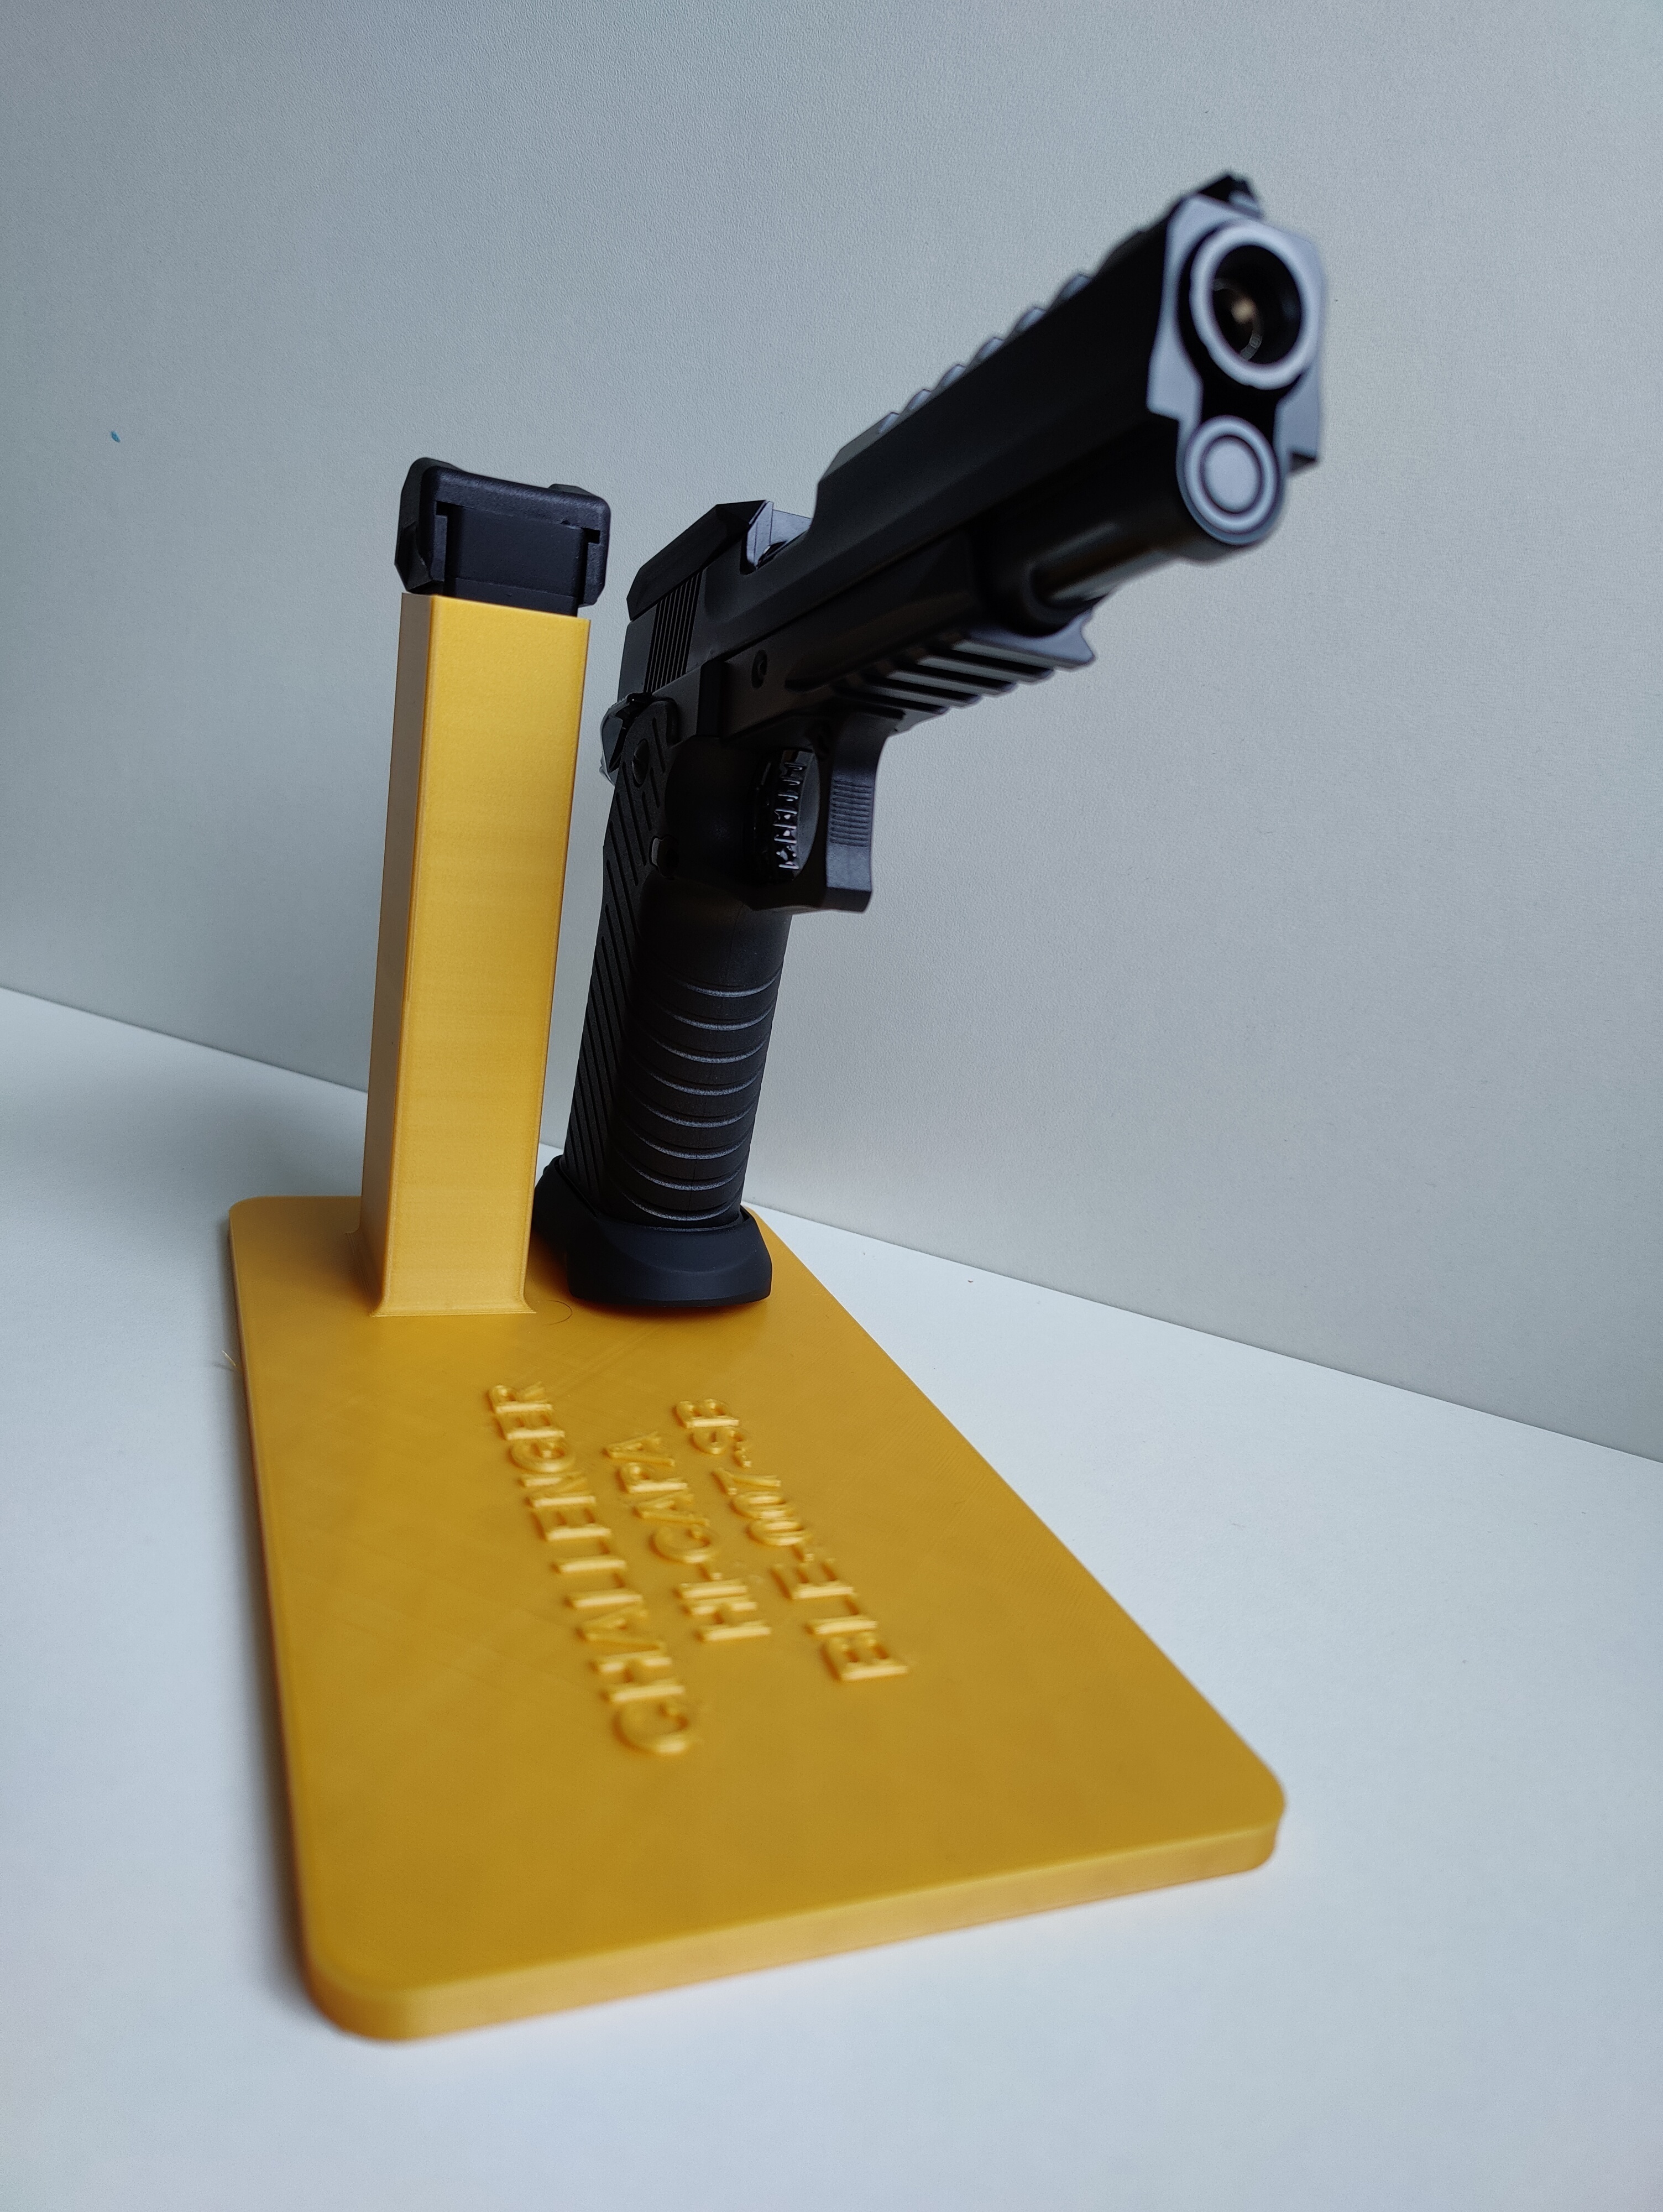 3D Print Support Pistolet Hi-Capa Black - Blowback Shop Sàrl